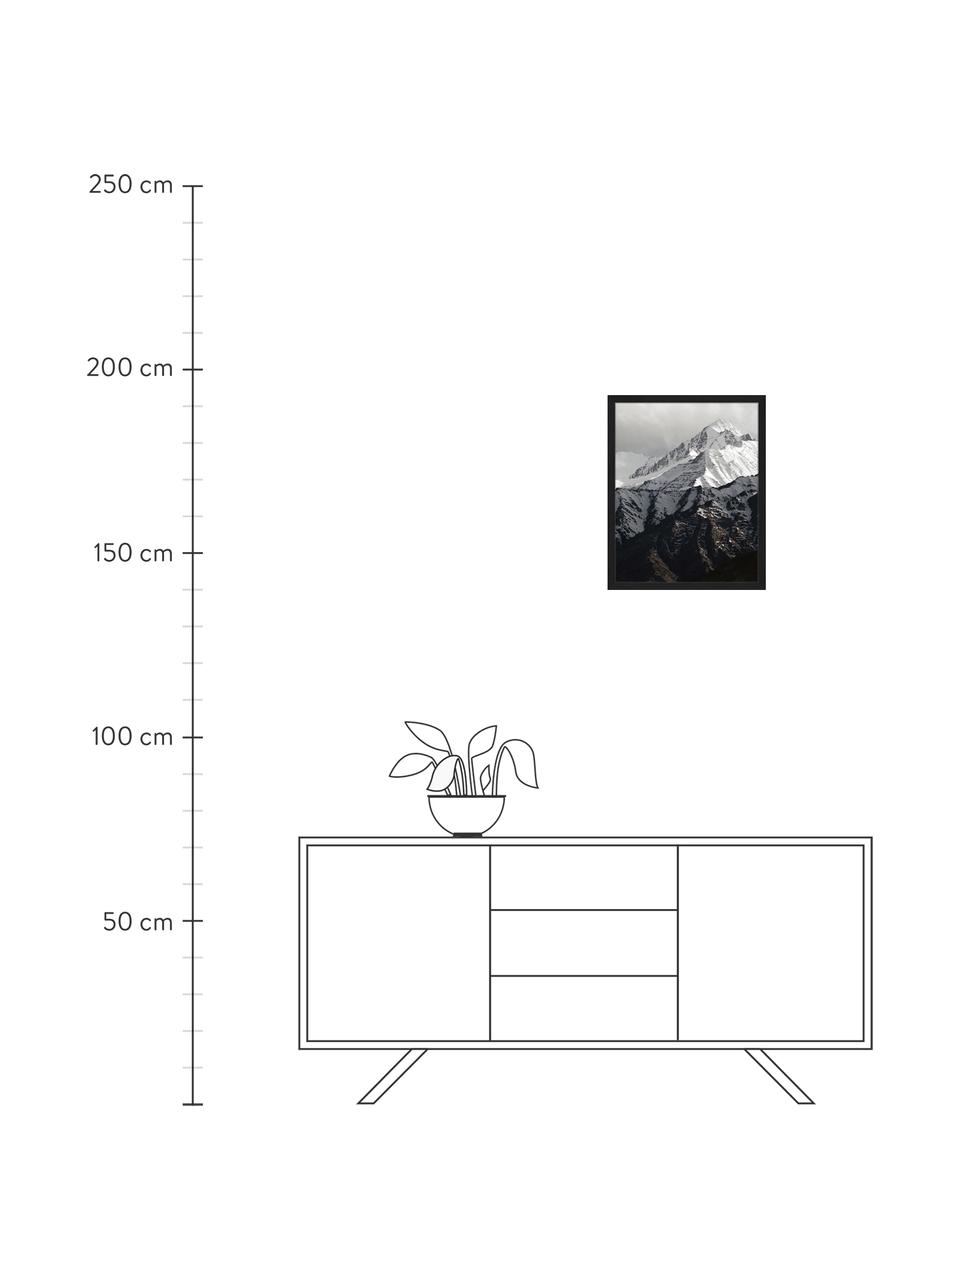 Stampa digitale incorniciata Snow Mountain, Immagine: stampa digitale su carta,, Cornice: legno verniciato, Nero, bianco, Larg. 43 x Alt. 53 cm